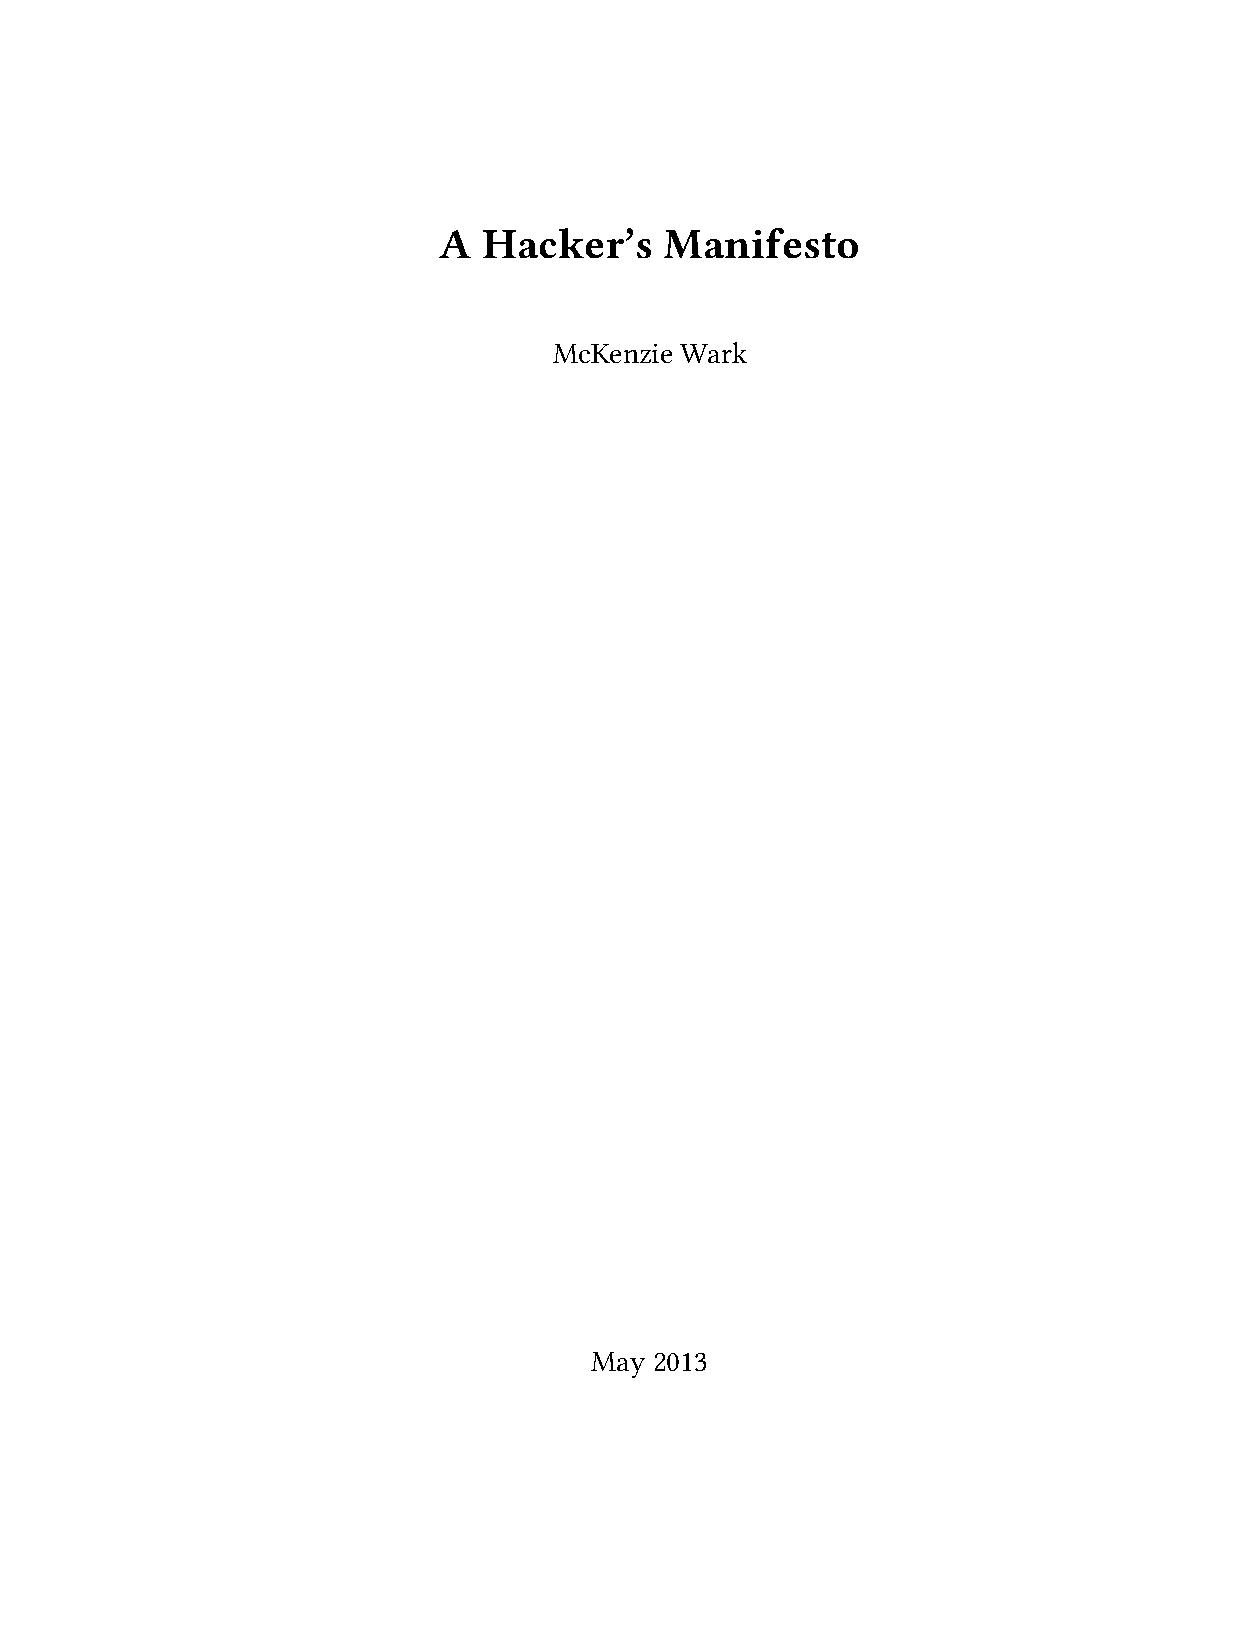 A Hacker's Manifesto - McKenzie Wark